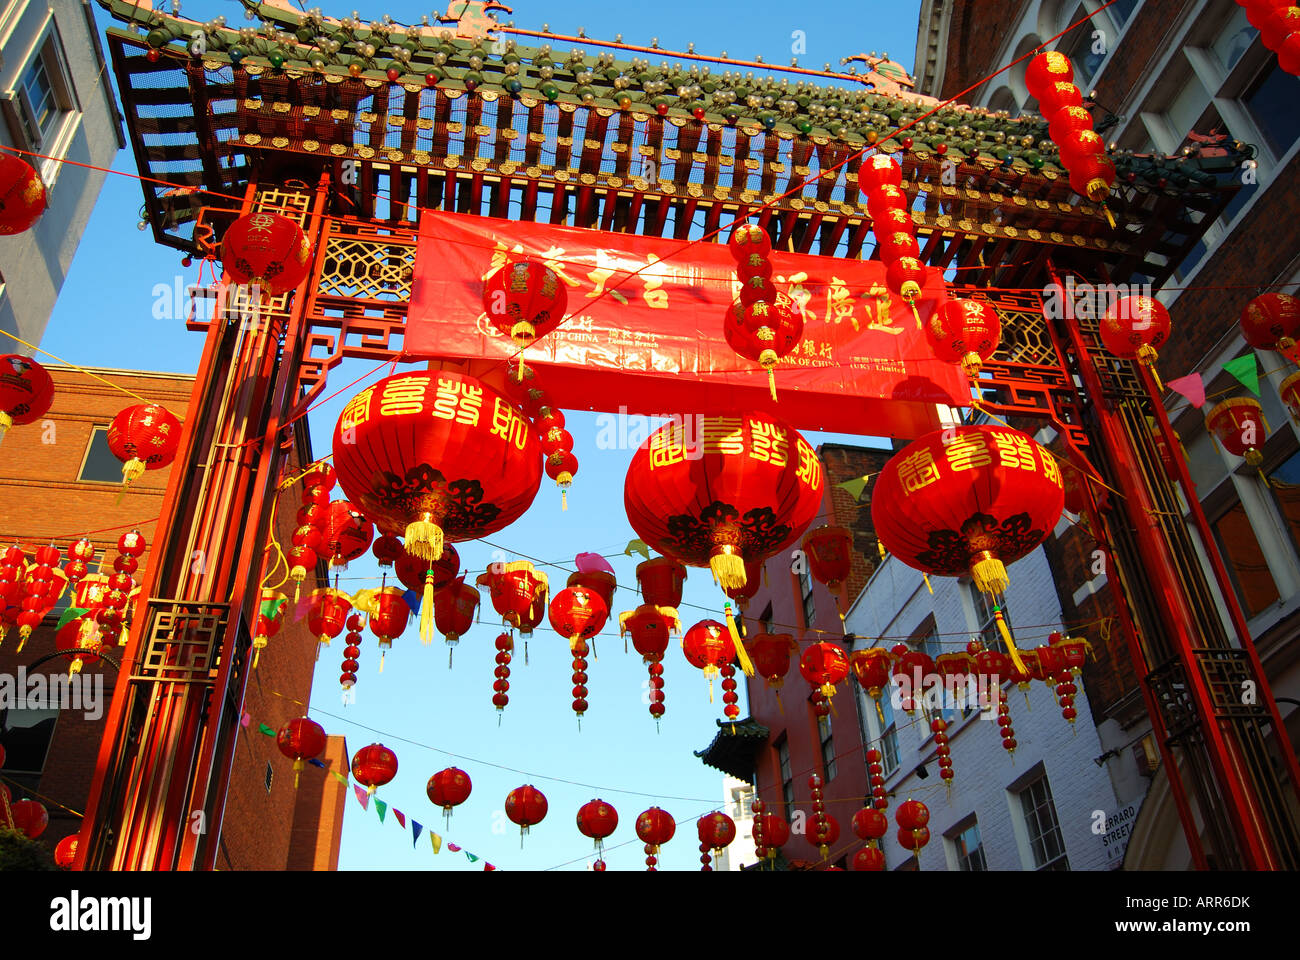 Chinese New Year decorations, Chinatown, Soho, West End, London, England, United Kingdom Stock Photo